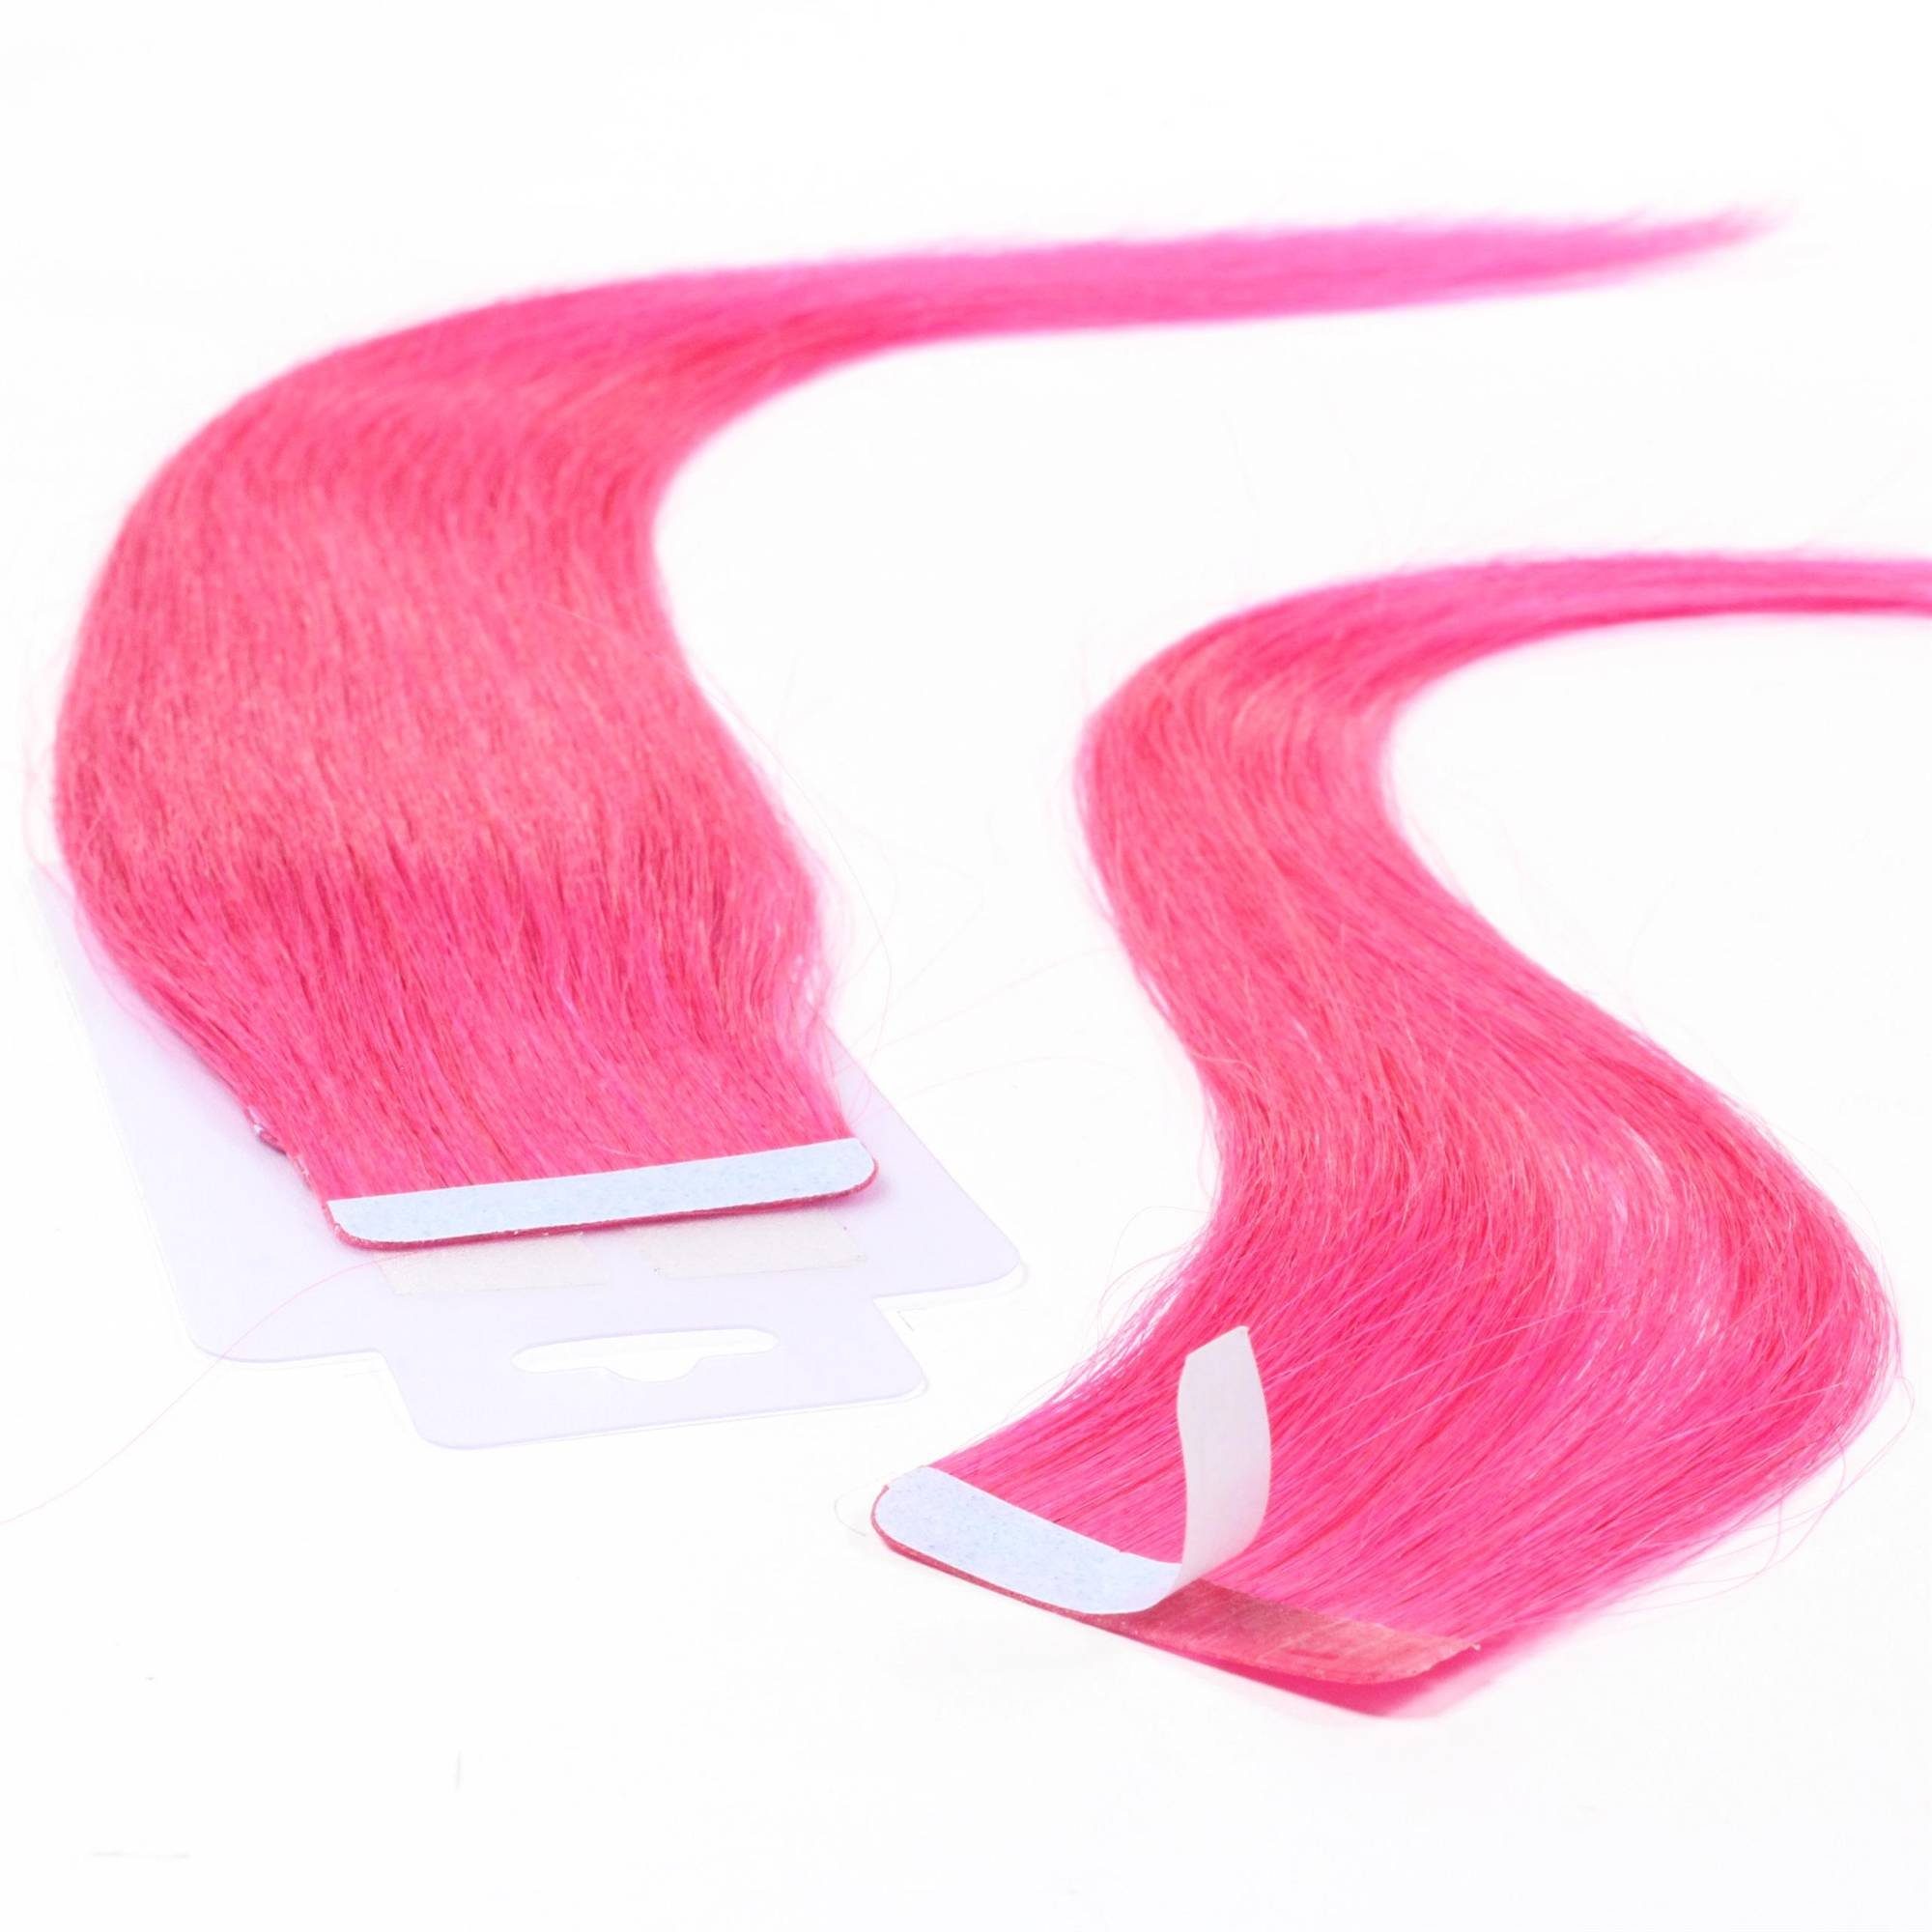 hair2heart Echthaar-Extension Tape Extensions glatt #Pink 60cm